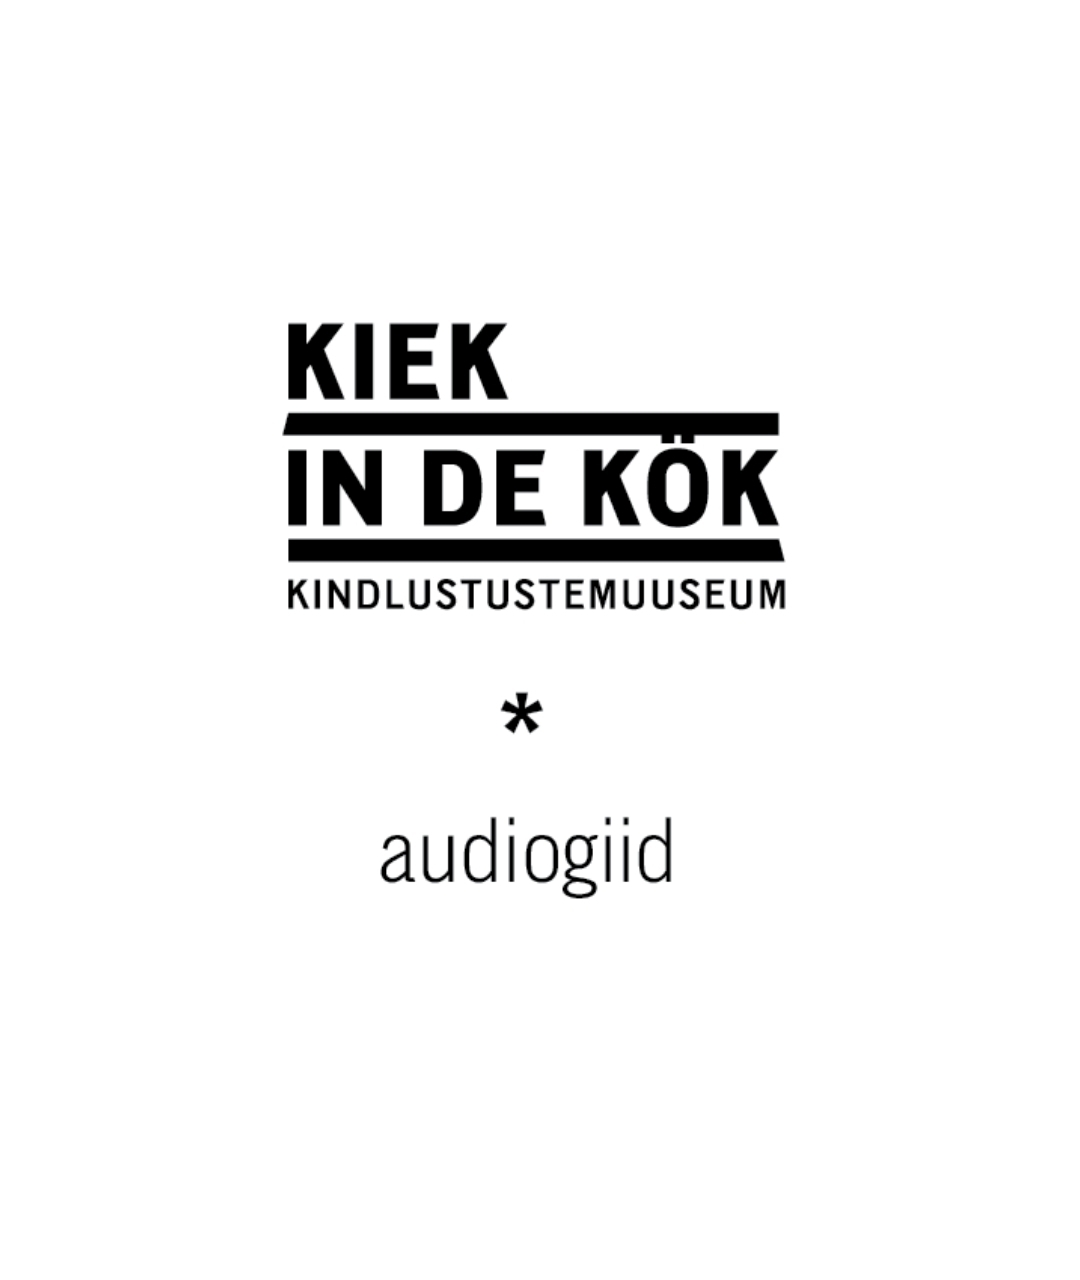 Kiek in de Köki kindlustustemuuseumi audiogiid